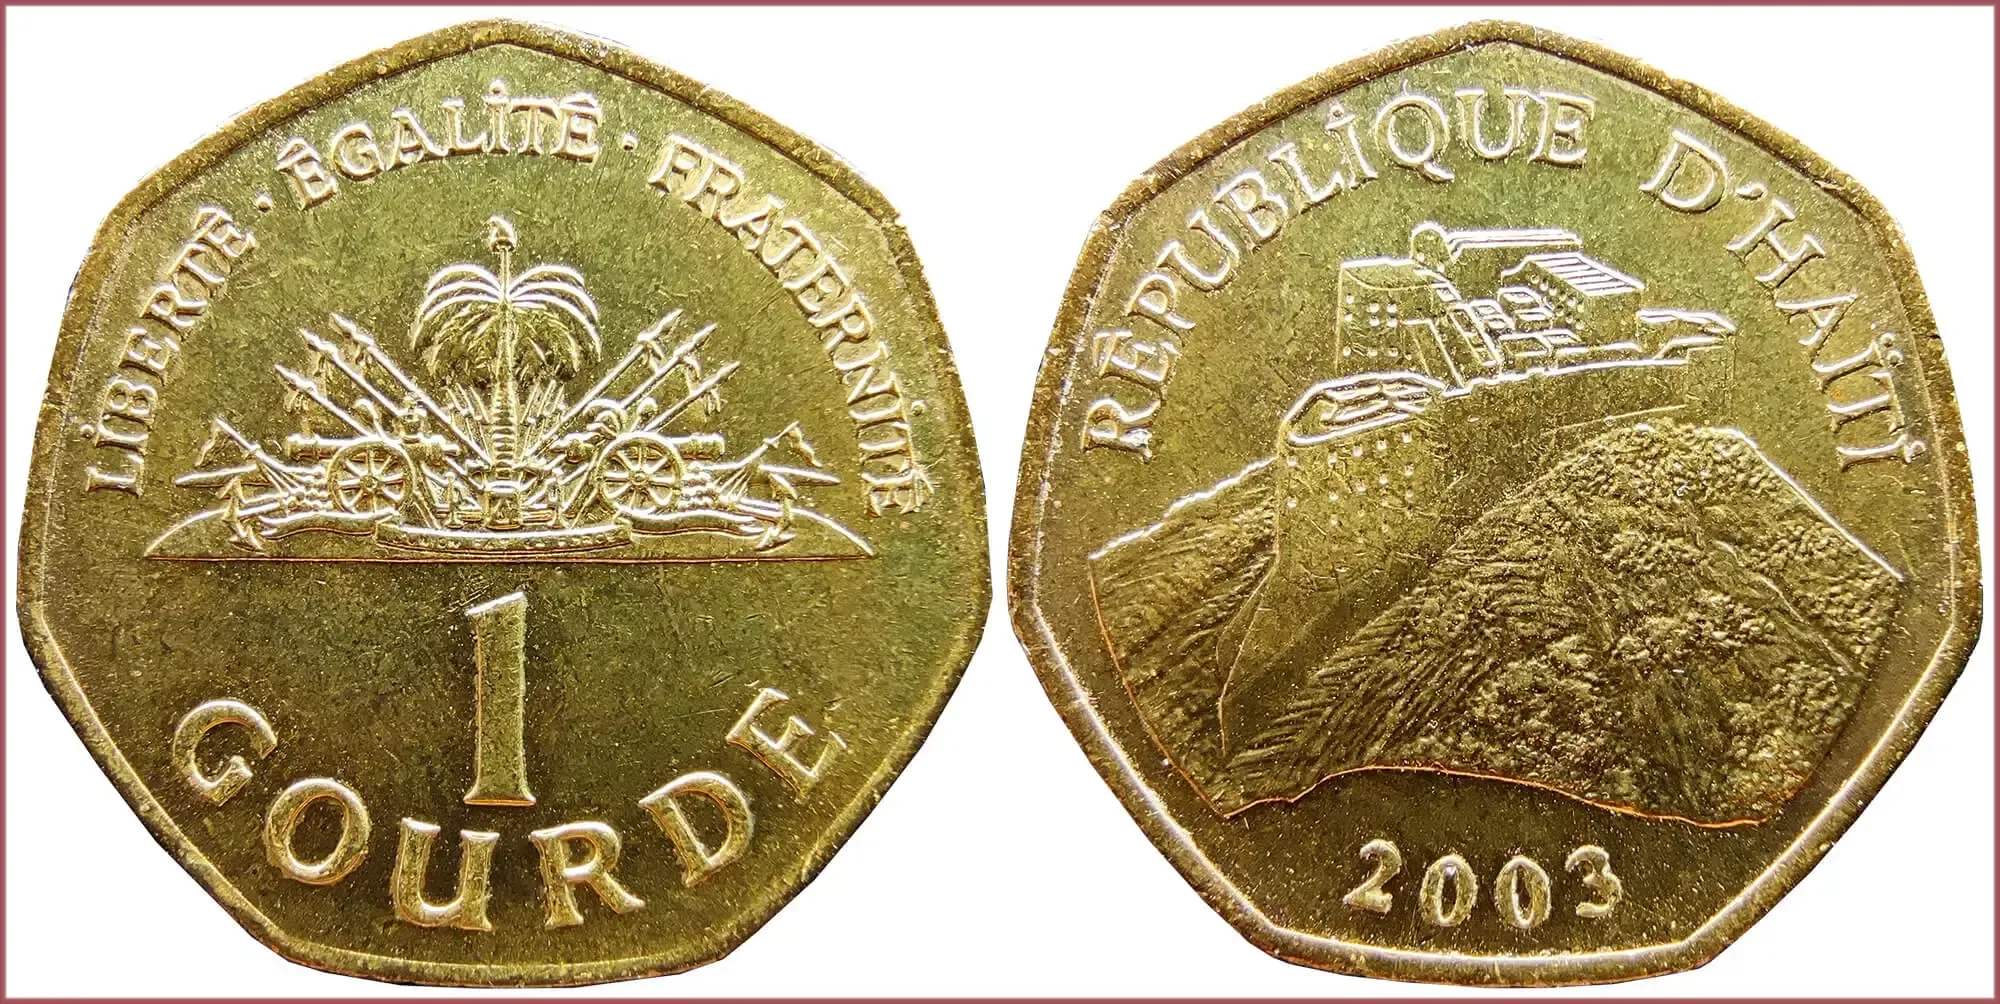 1 gourde, 2003: Republic of Haiti